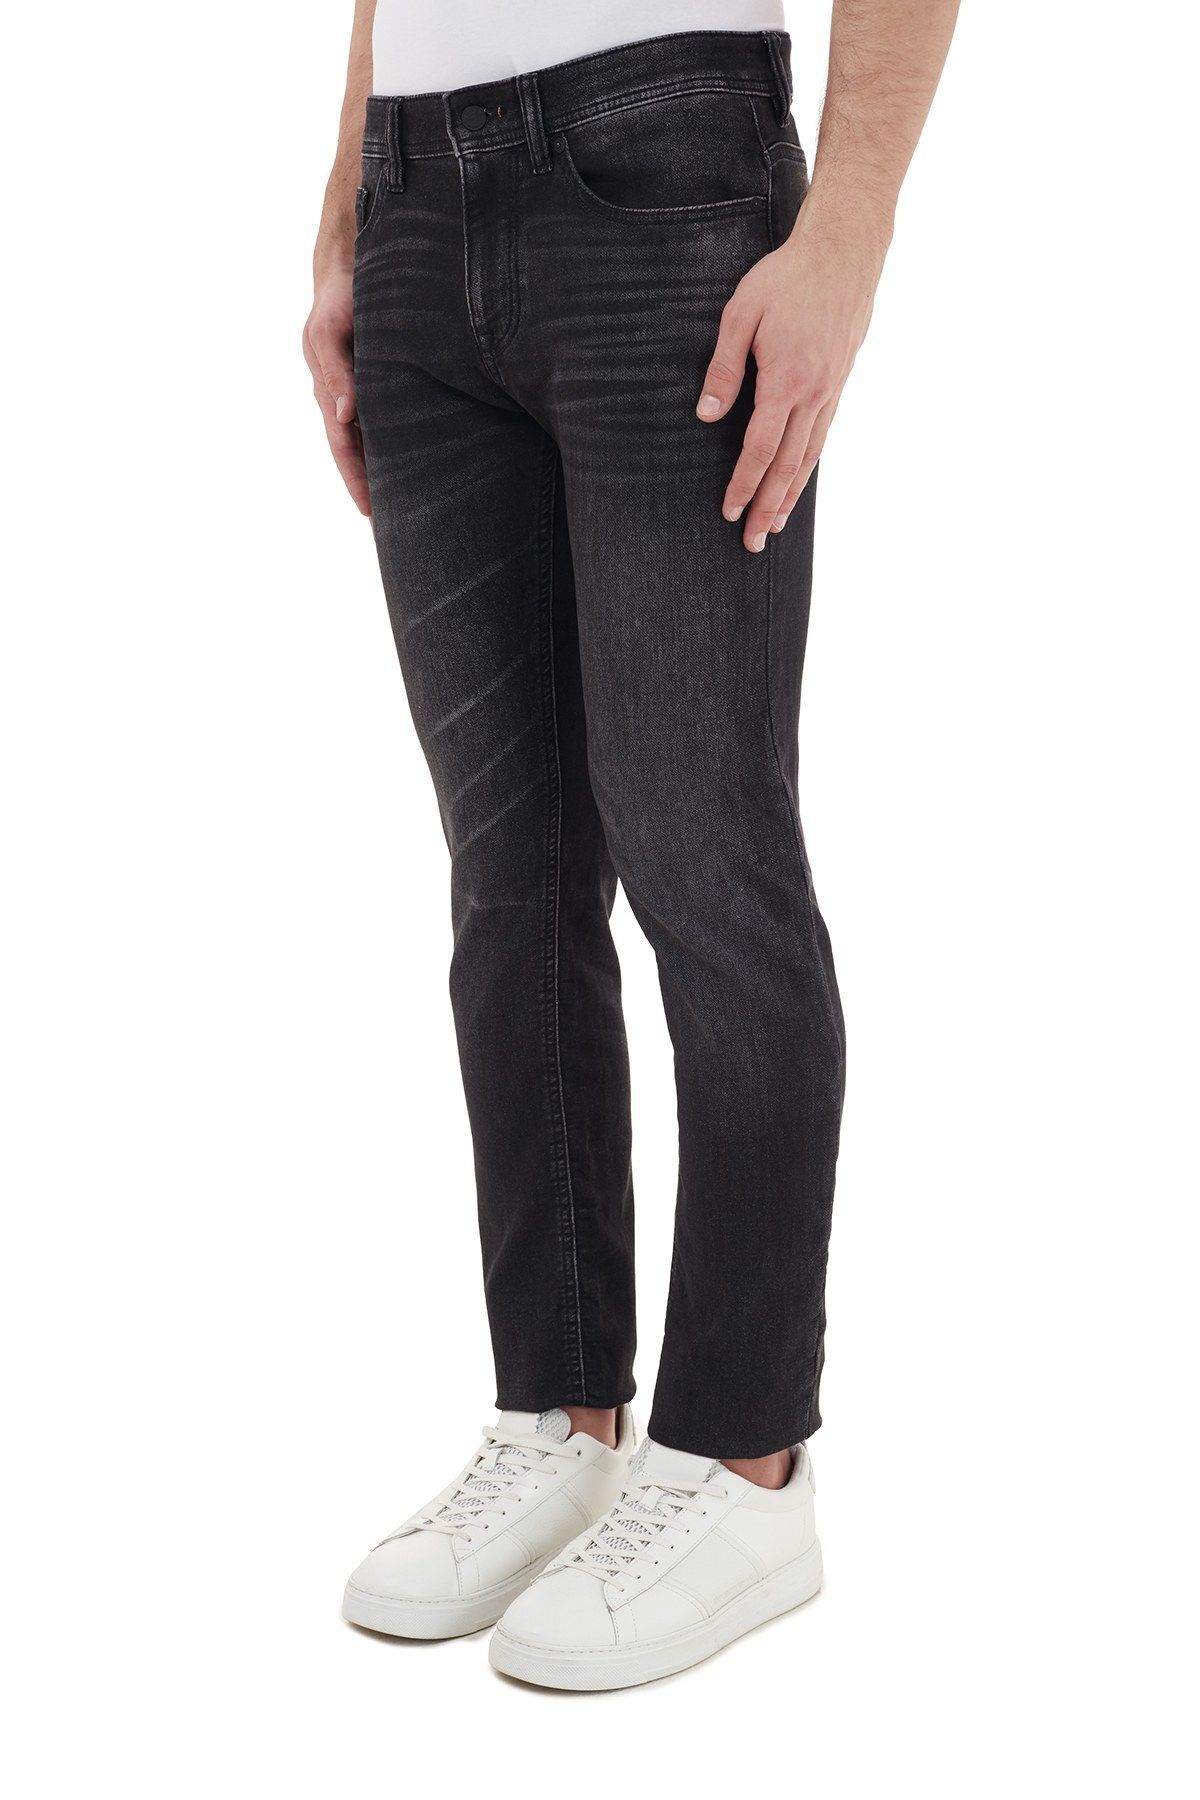 Hugo Boss Slim Fit Pamuklu Jeans Erkek Kot Pantolon 50438826 003 SİYAH